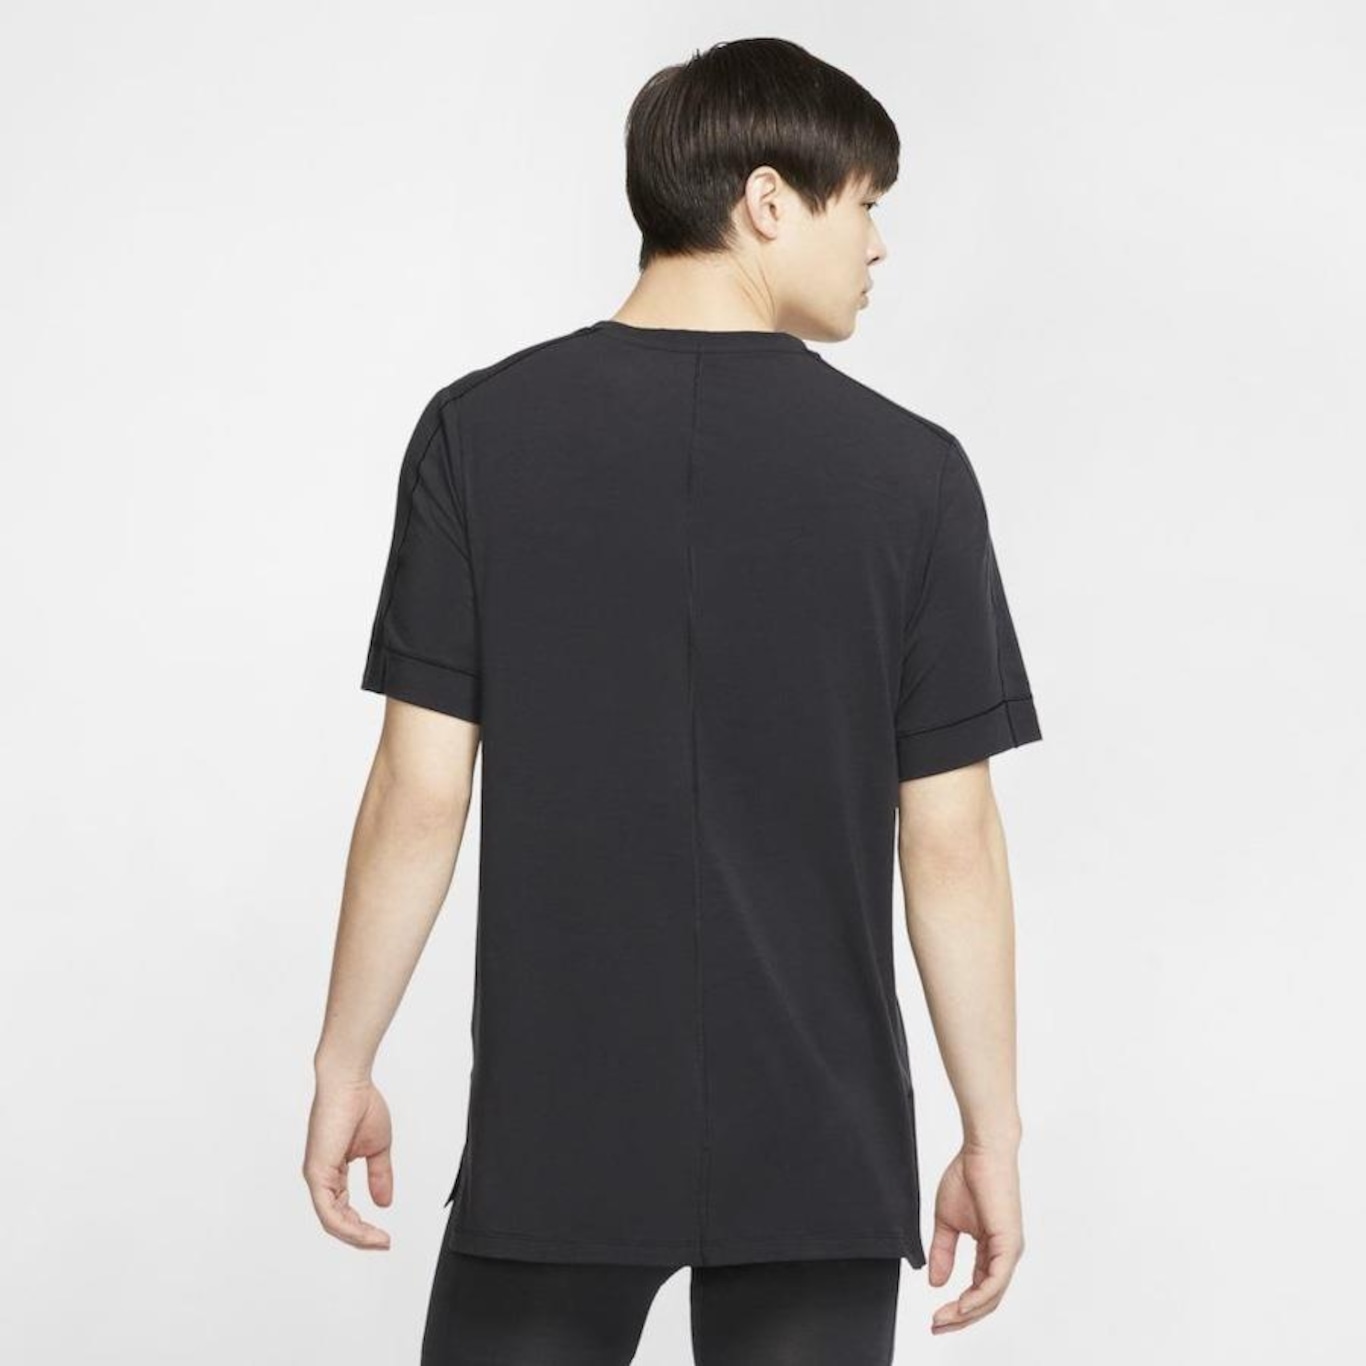 Nike Yoga t-shirt in black